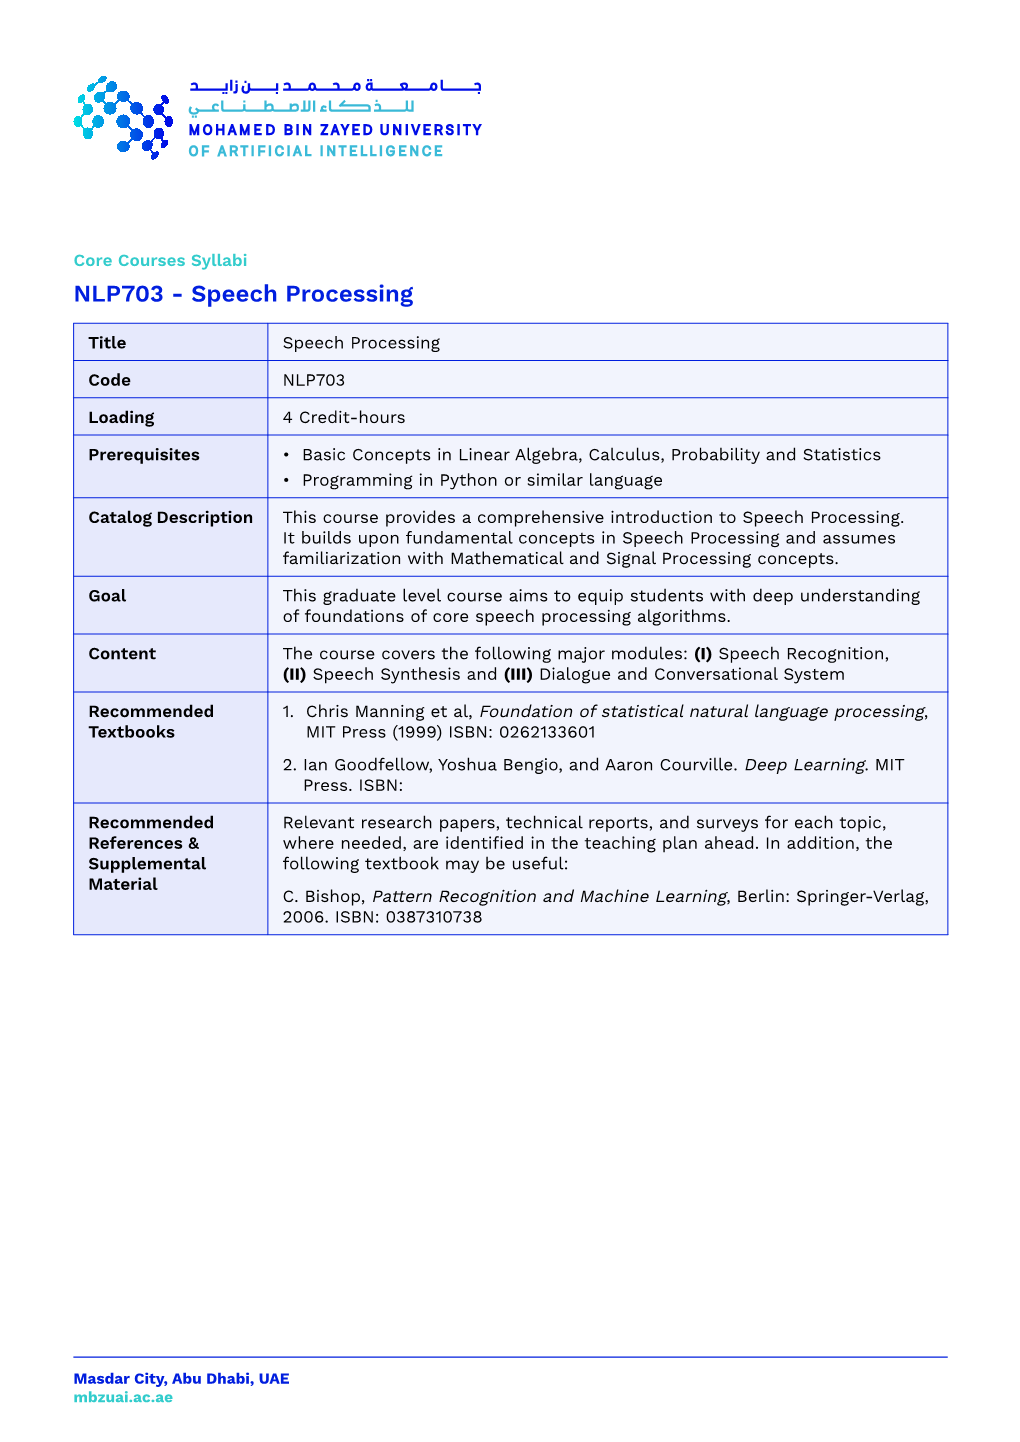 NLP703 - Speech Processing